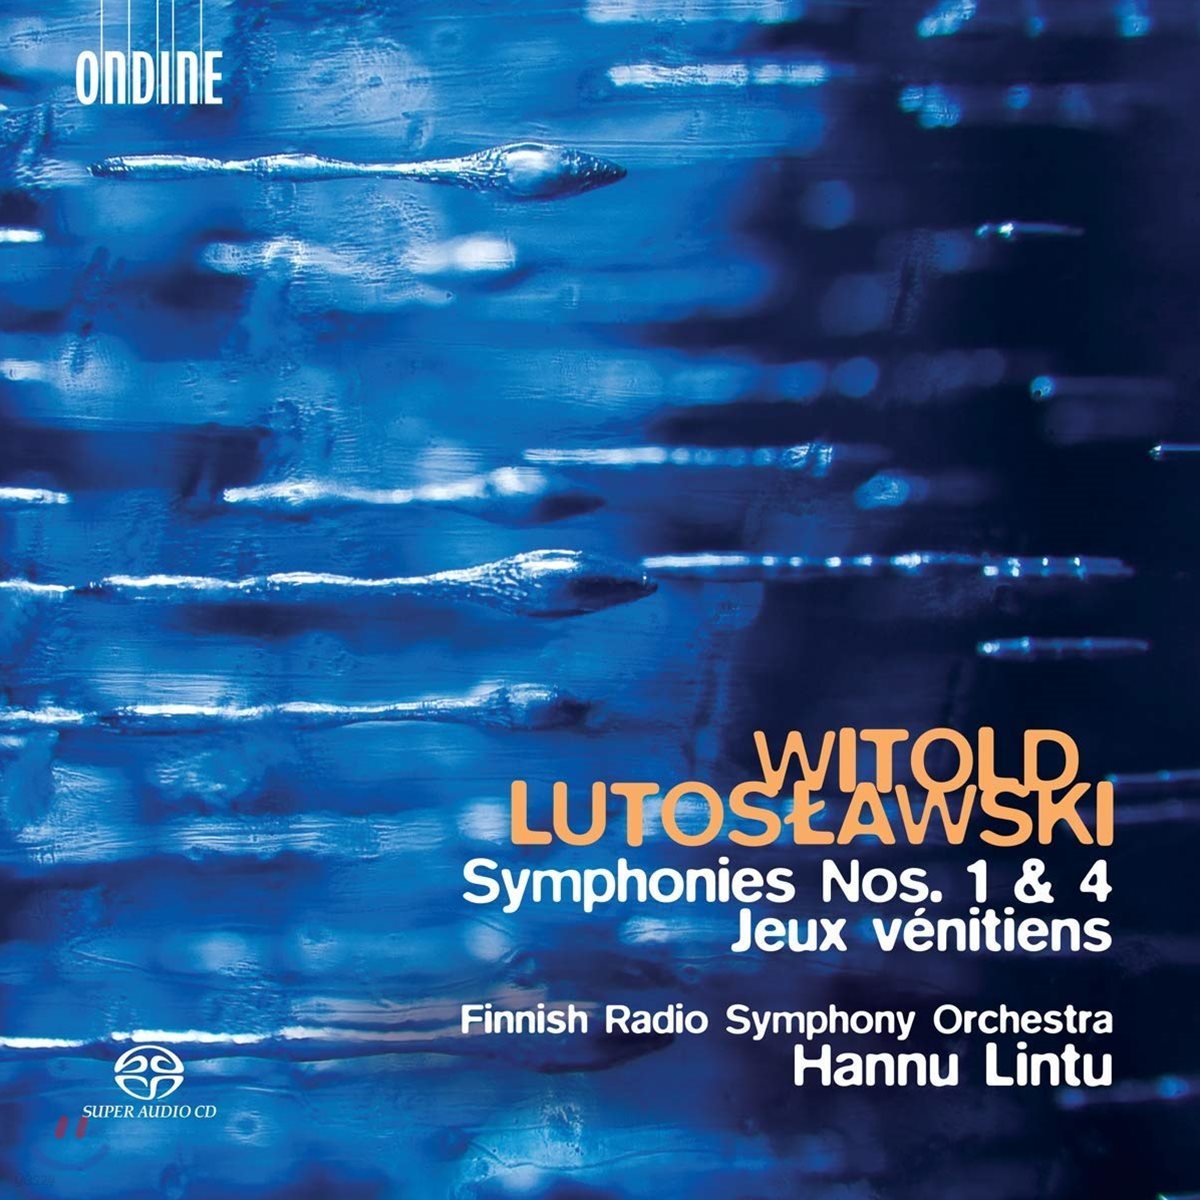 Hannu Lintu 루토스와프스키: 교향곡 1번, 4번, 베네치아인의 유희 (Lutoslawski: Symphonies Nos. 1 & 4, Jeux venitiens)